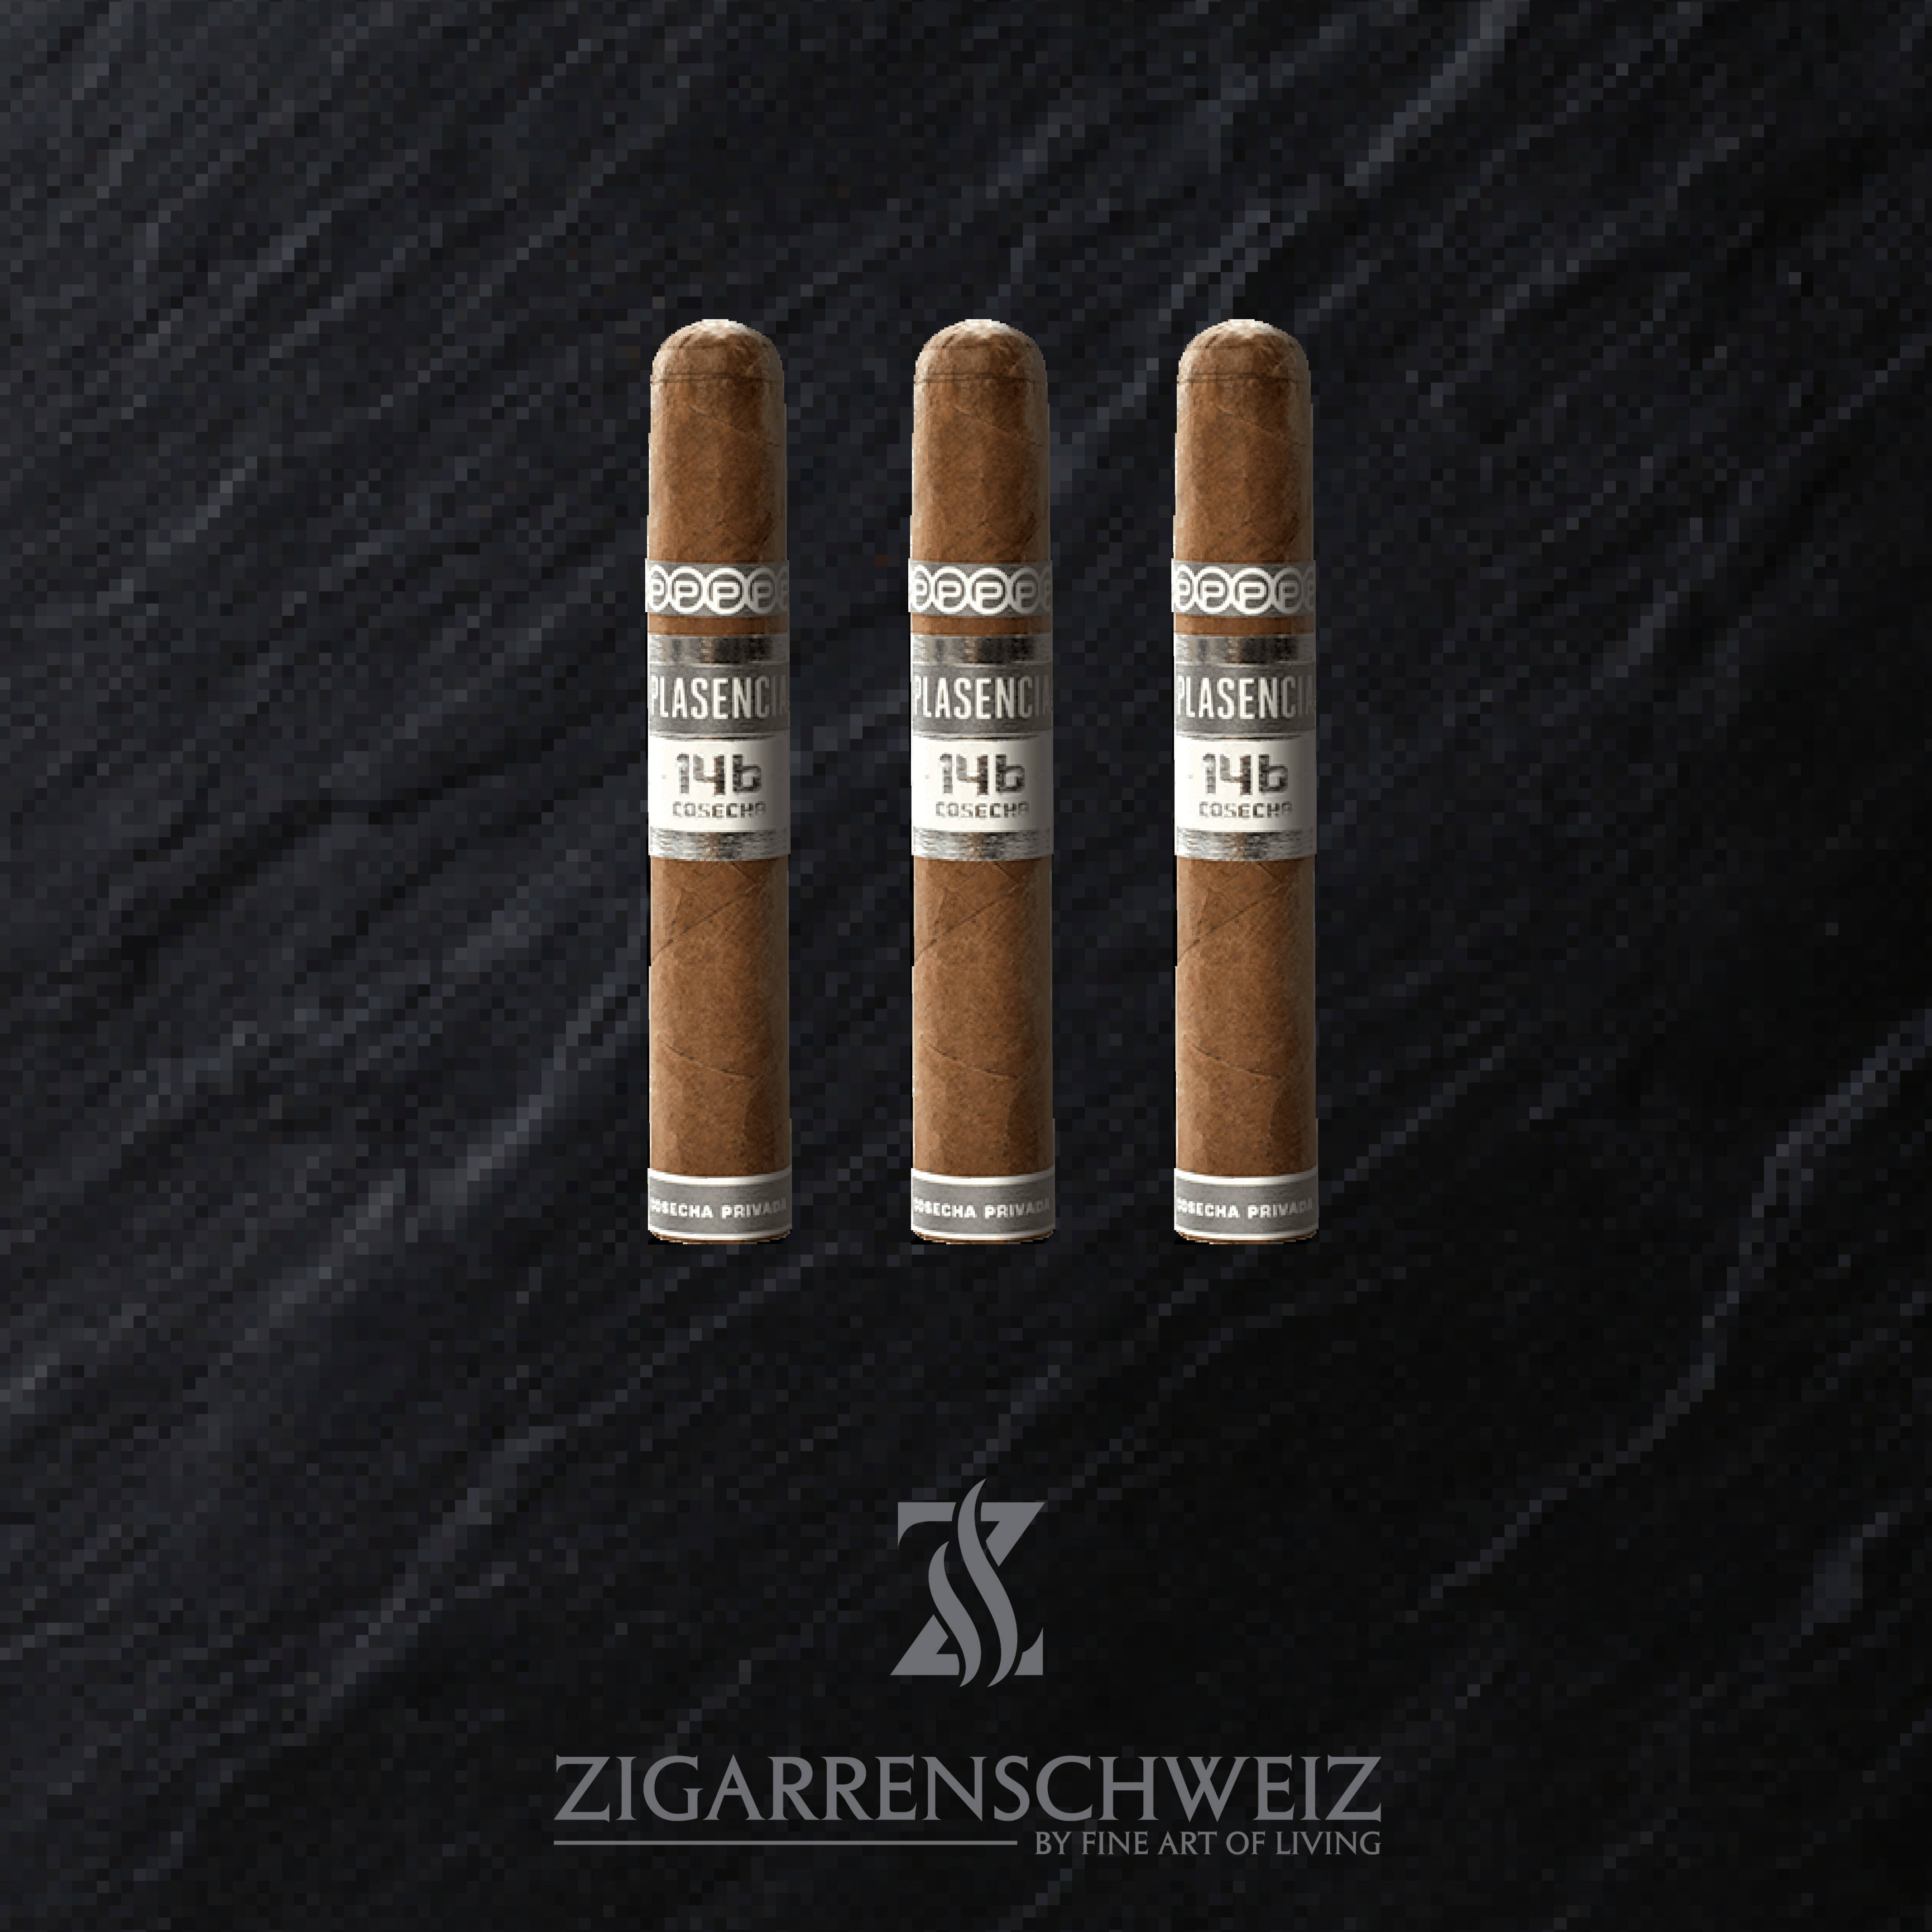 3er Etui Plasencia Cosecha 146 La Vega Zigarren im Robusto Gordo Format